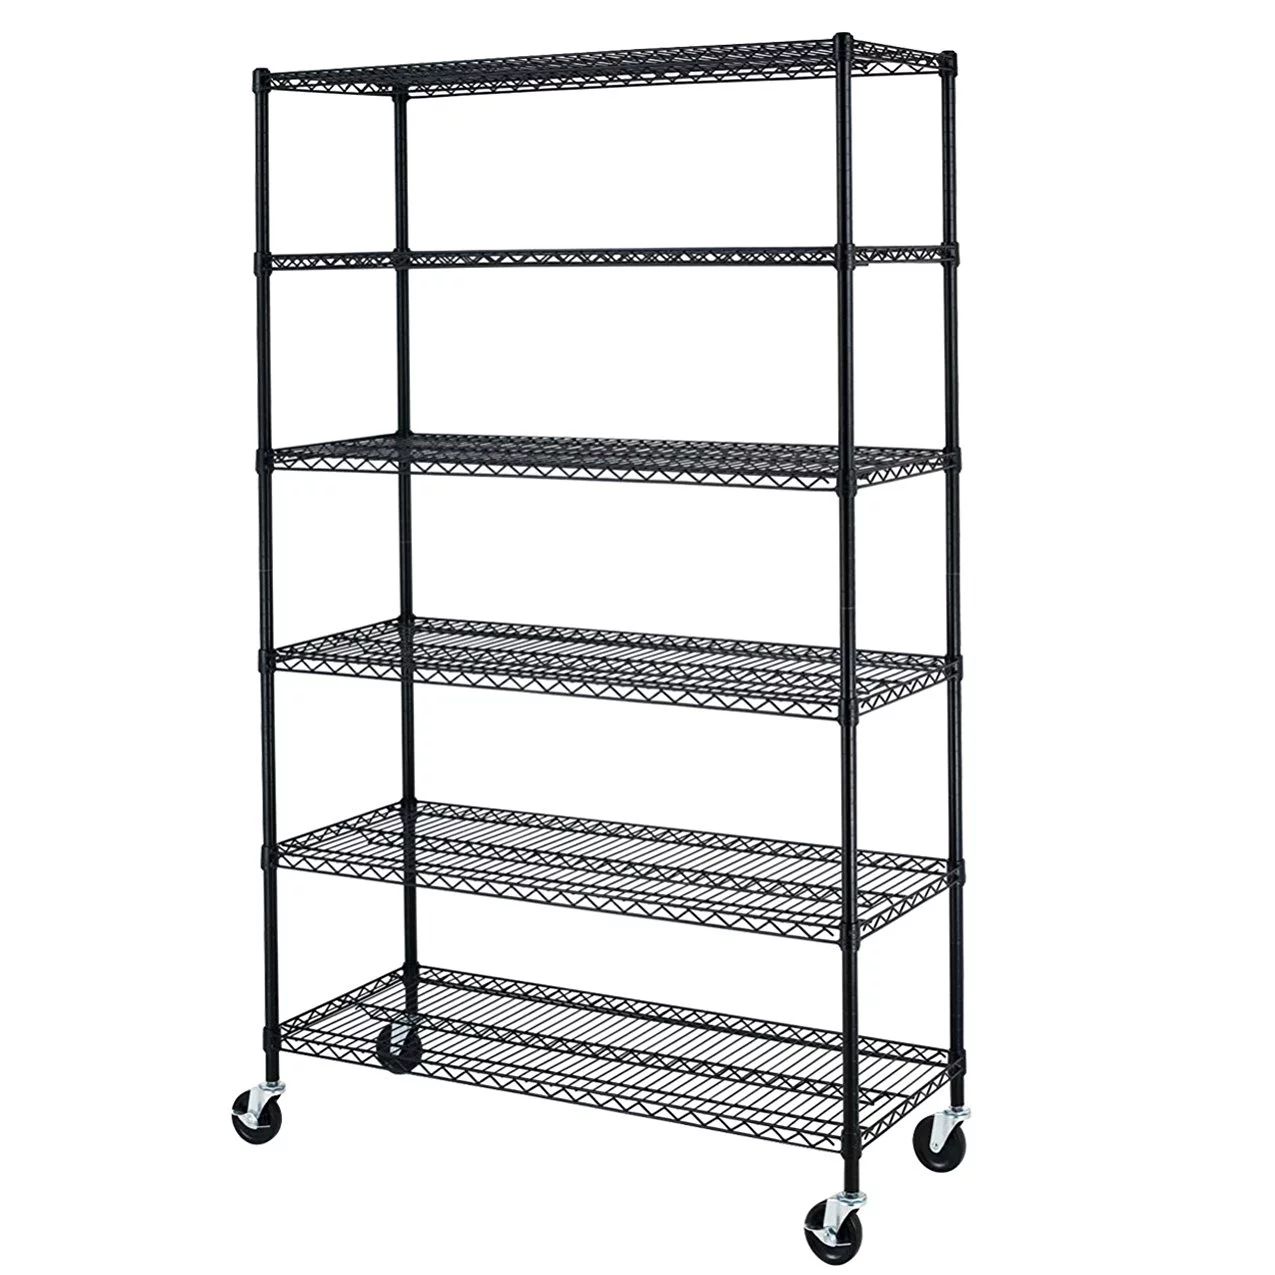 Black Commercial 6 Tier Shelf Adjustable Steel Wire Metal Shelving Rack | Walmart (US)